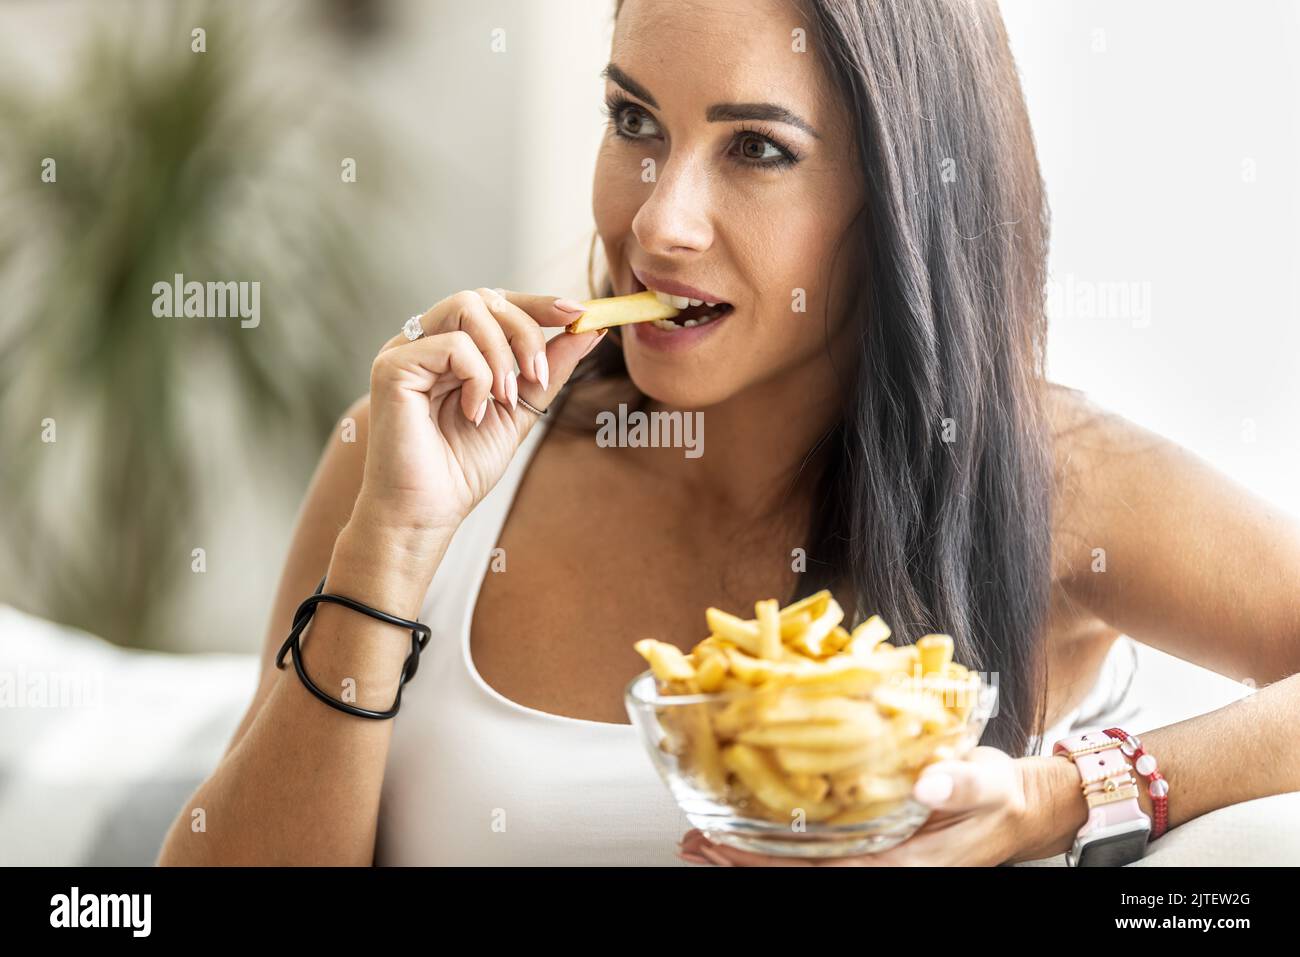 Eine Frau, die eine Schüssel mit Pommes isst, beißt in knusprig gelbe, in den Fingern gebratene französische pommes. Stockfoto